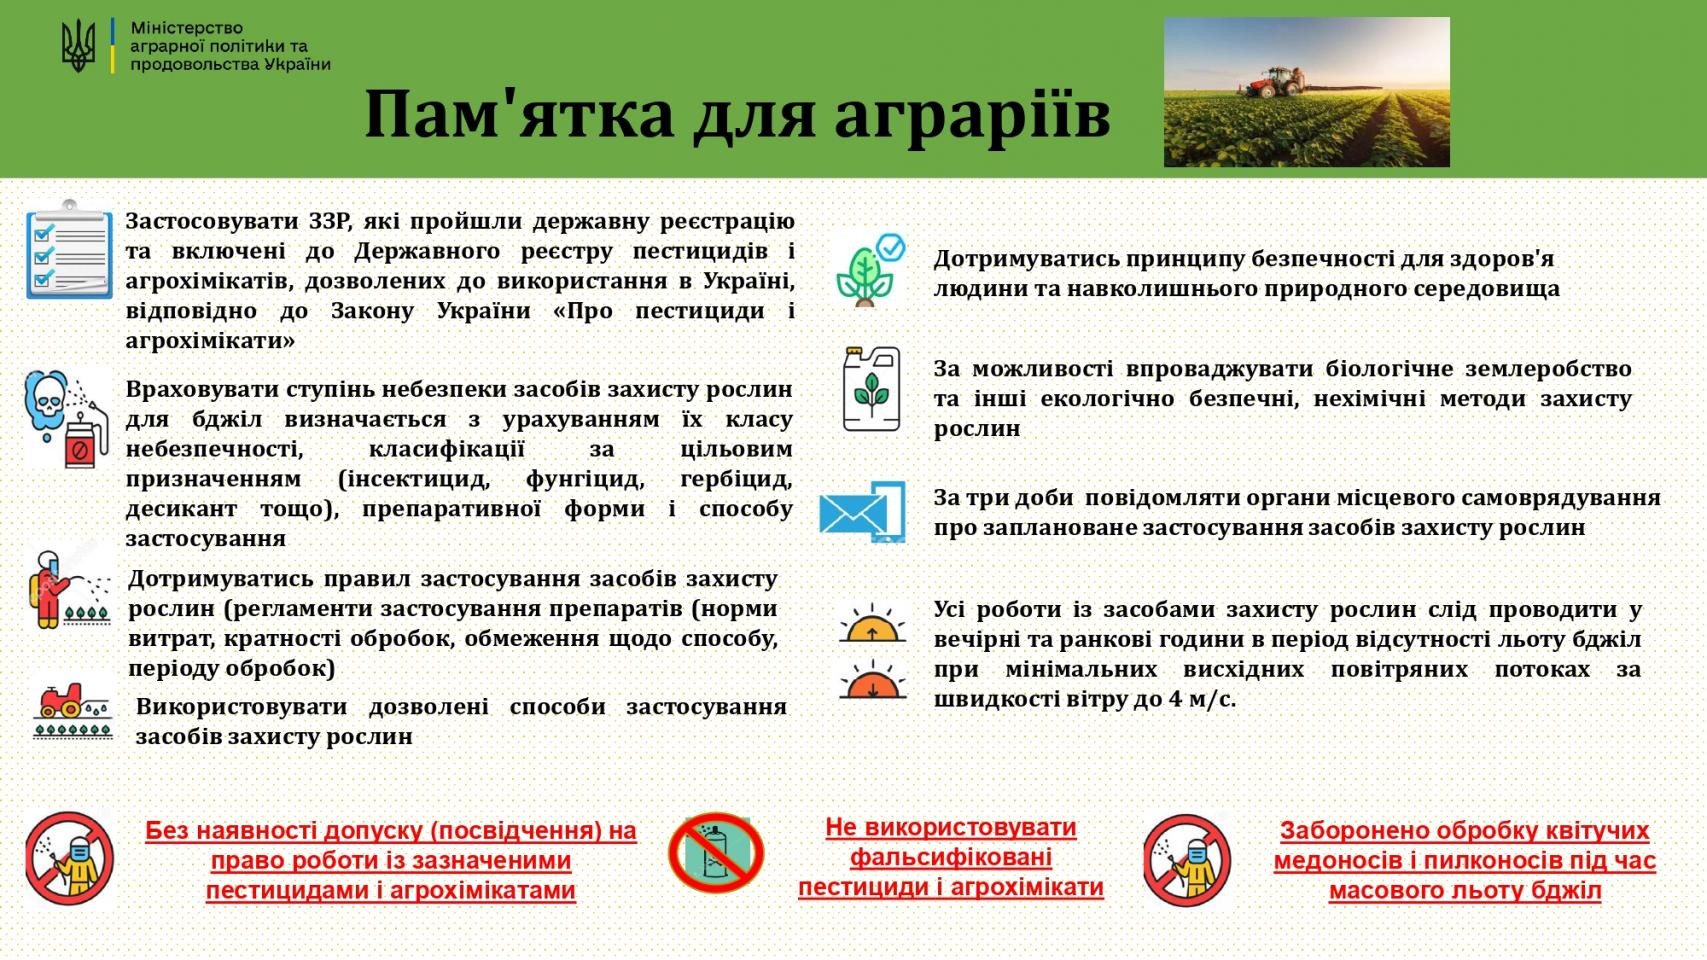 http://dunrada.gov.ua/uploadfile/archive_news/2023/03/27/2023-03-27_2315/images/images-45226.jpg